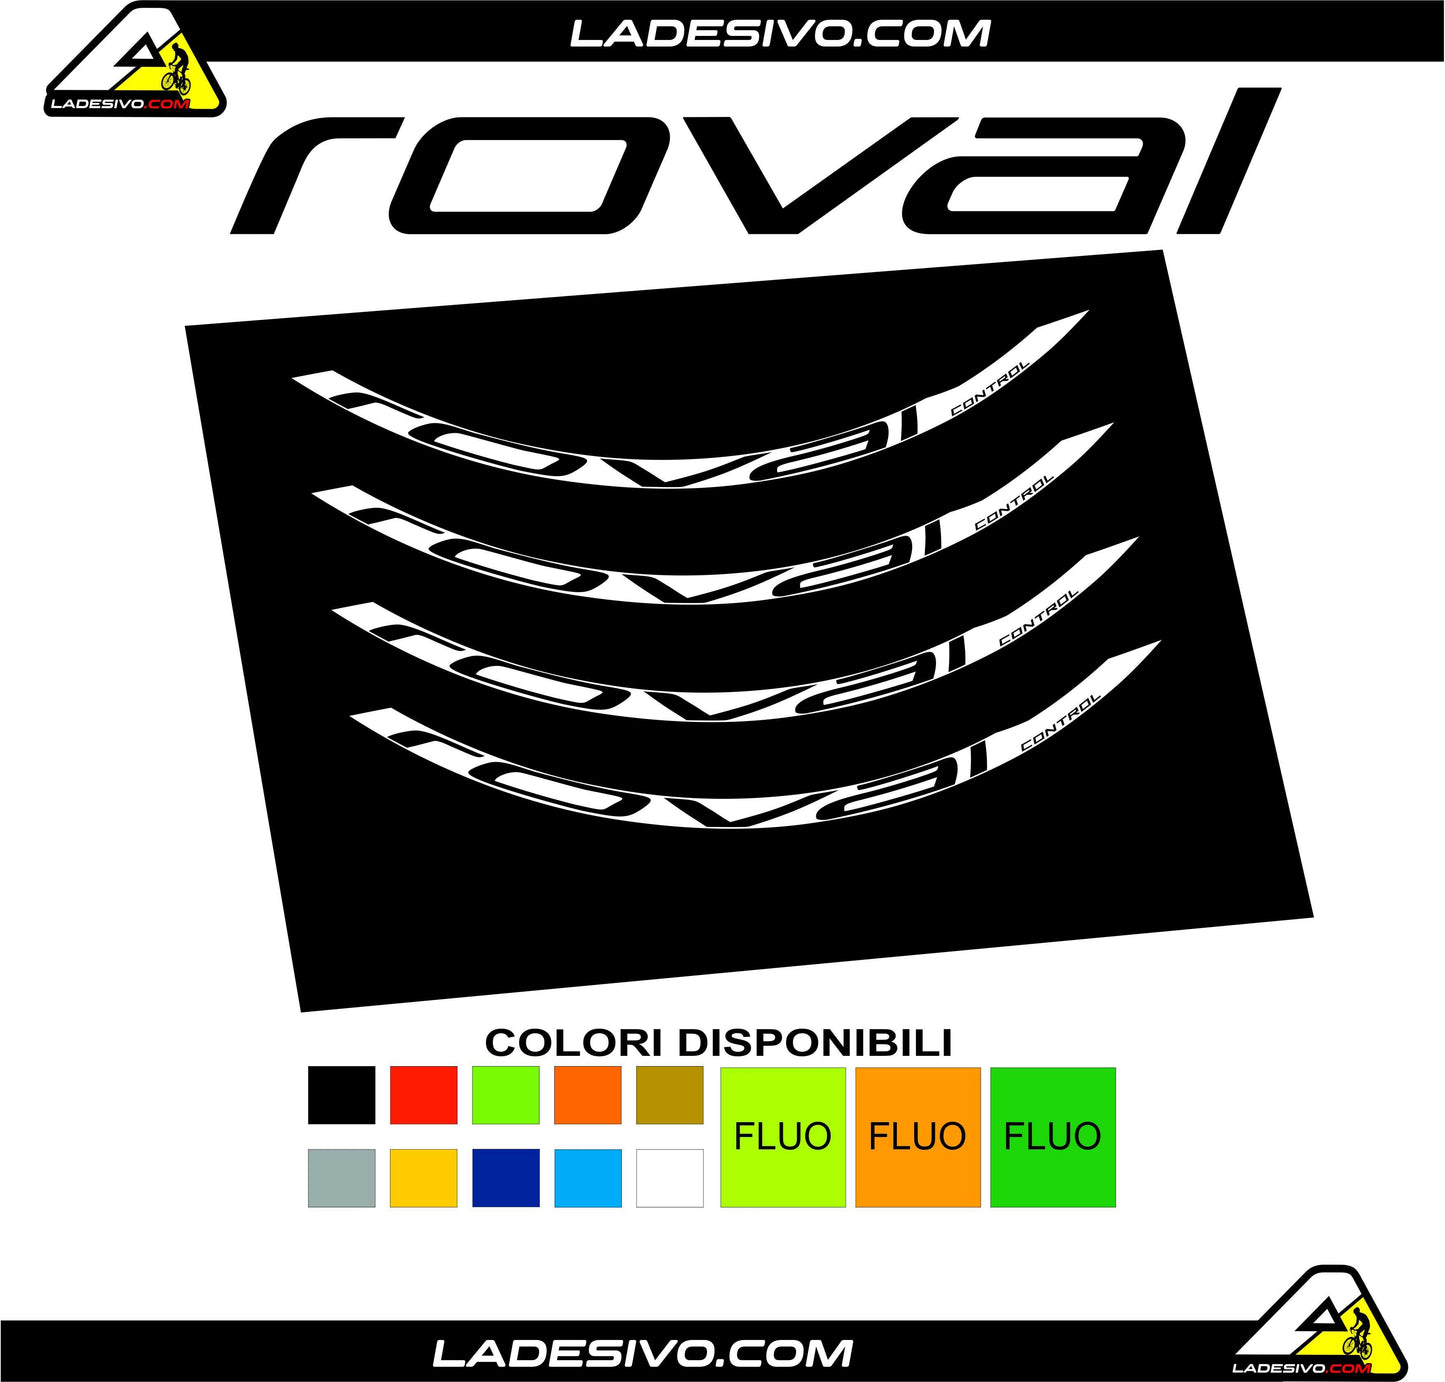 Adesivi cerchi ruote mtb roval control colori a scelta anche fluo personalizzabili